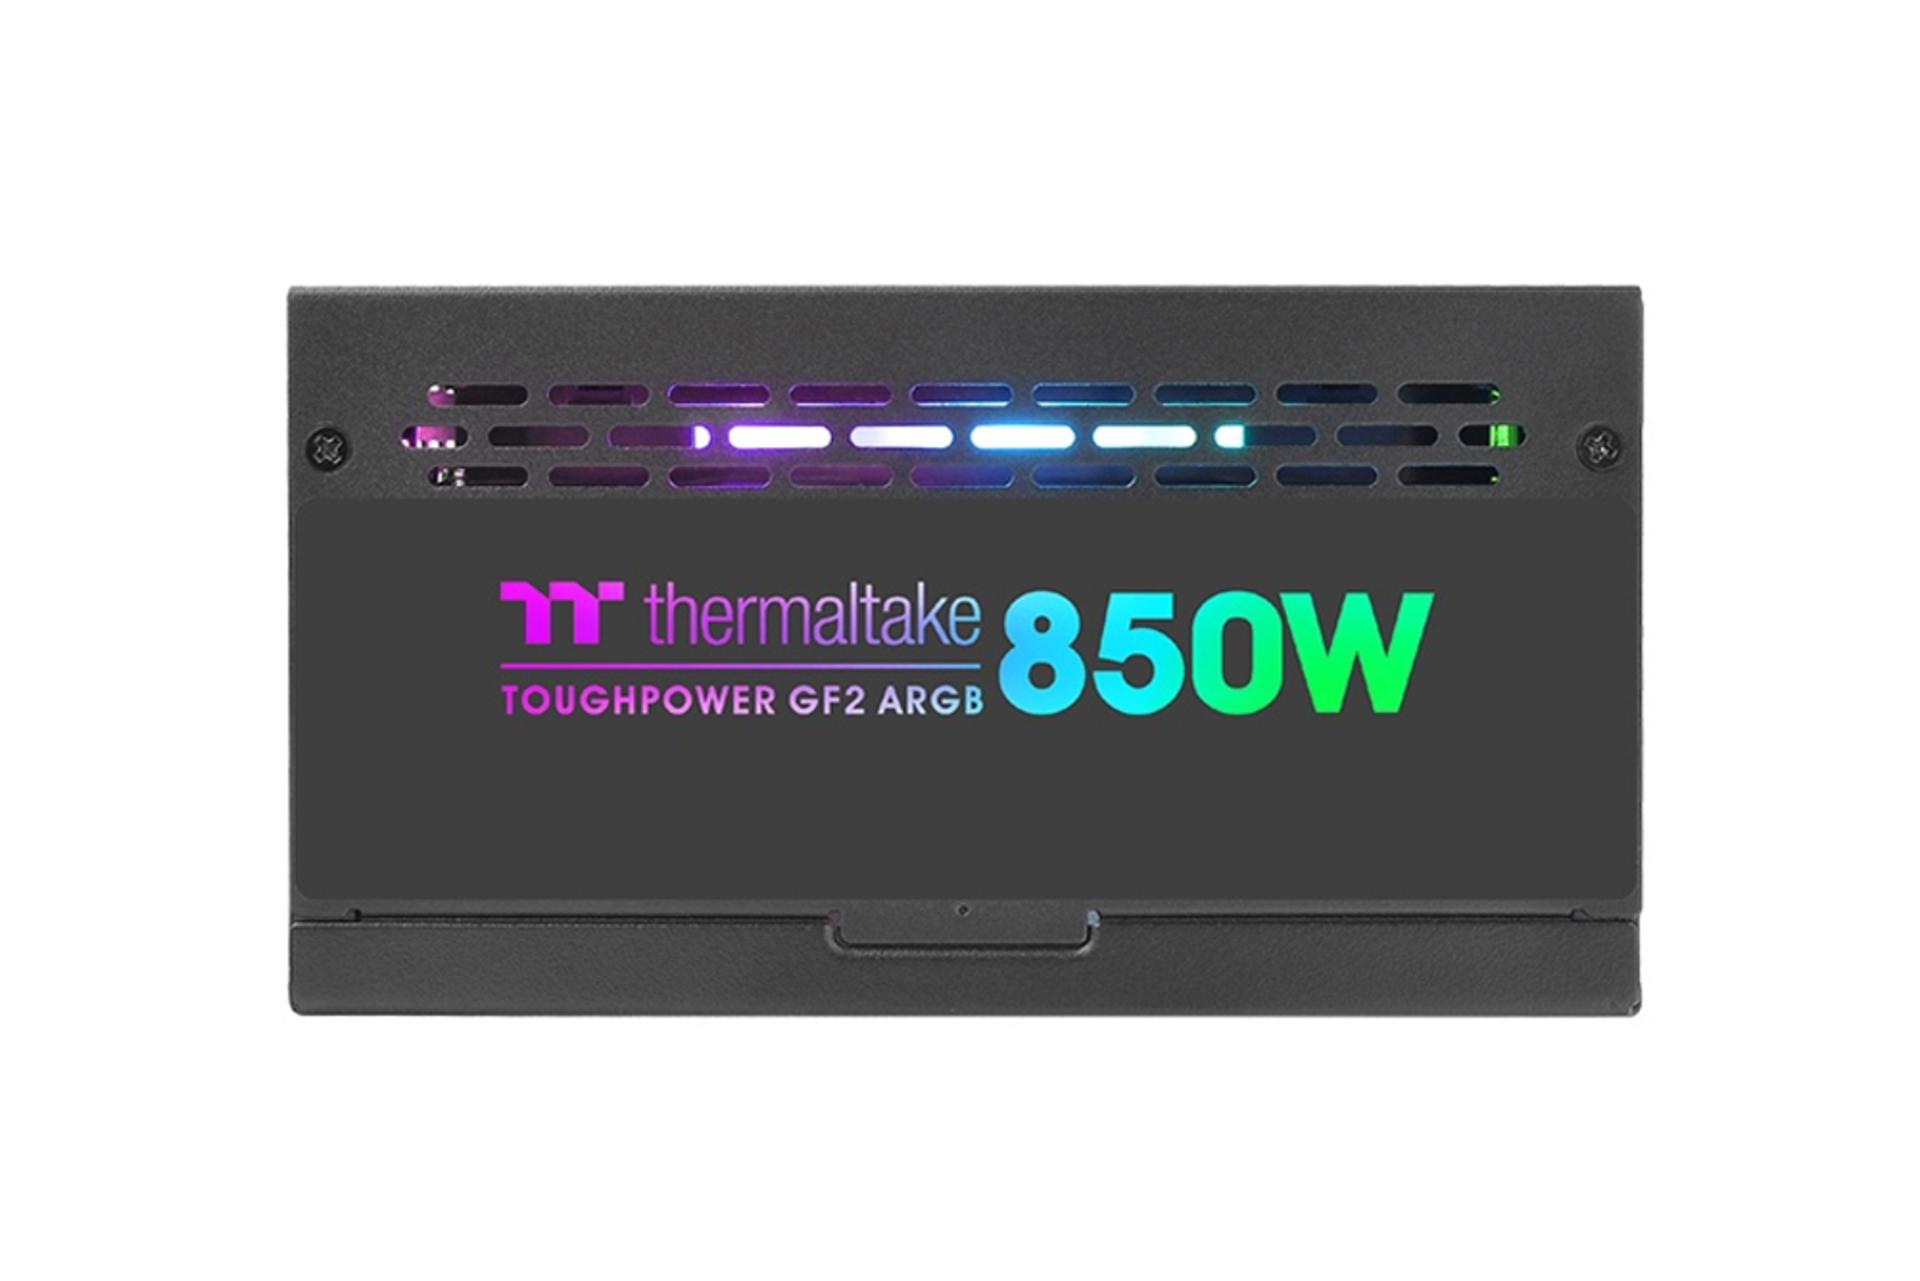 نمای کناری پاور کامپیوتر ترمالتیک Toughpower GF2 ARGB 850W - TT Premium Edition با توان 850 وات